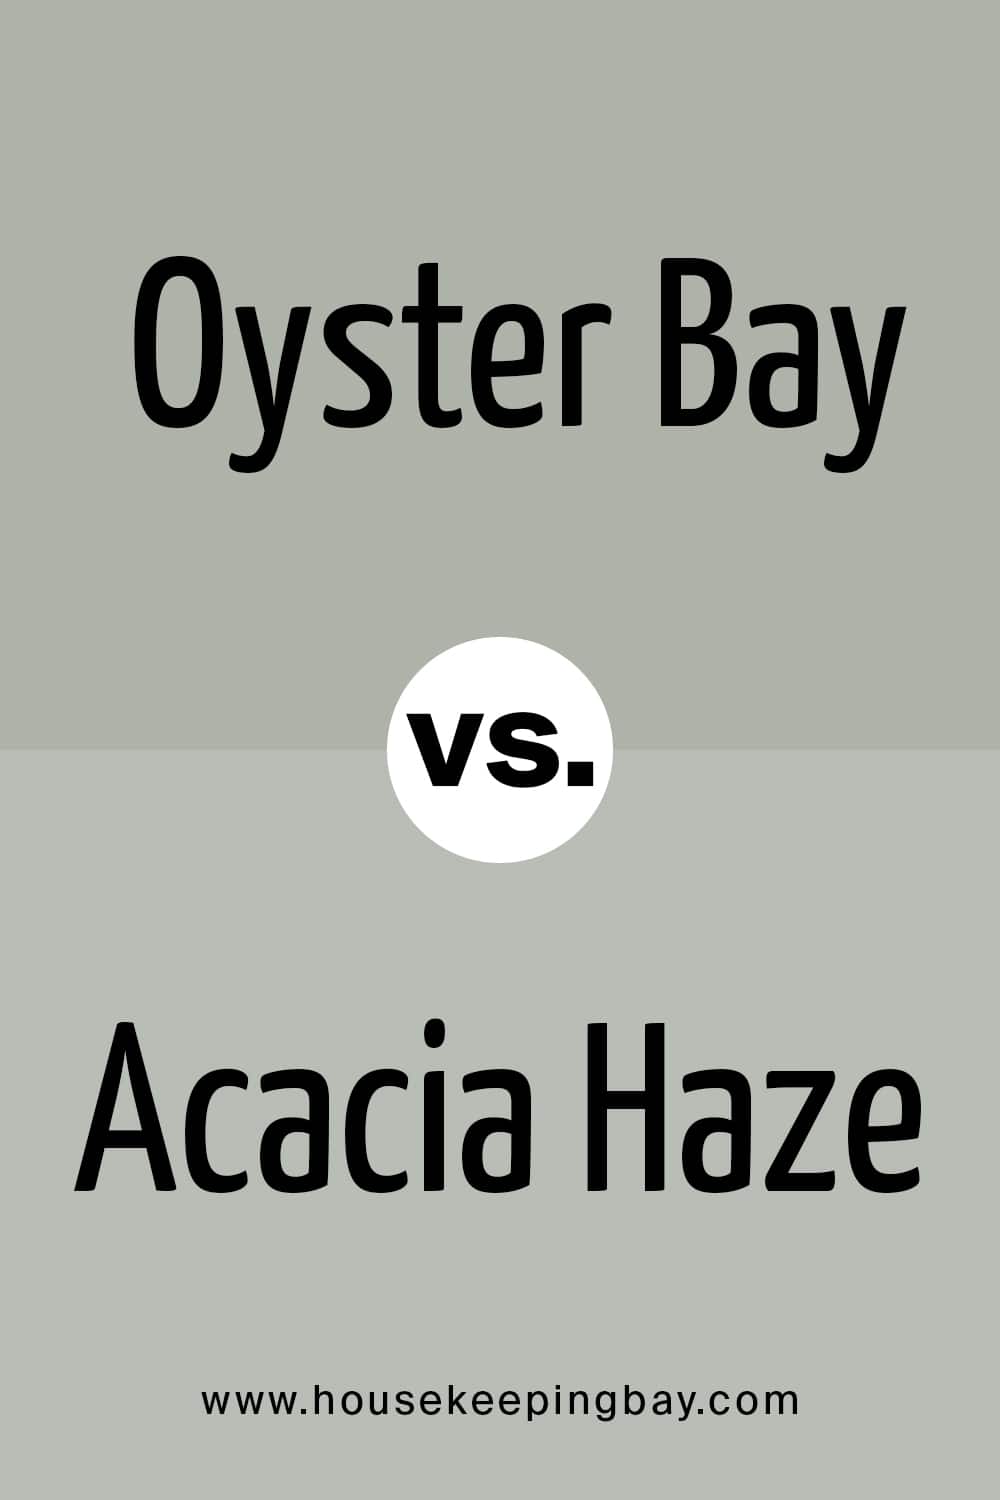 Oyster Bay VS Acacia Haze